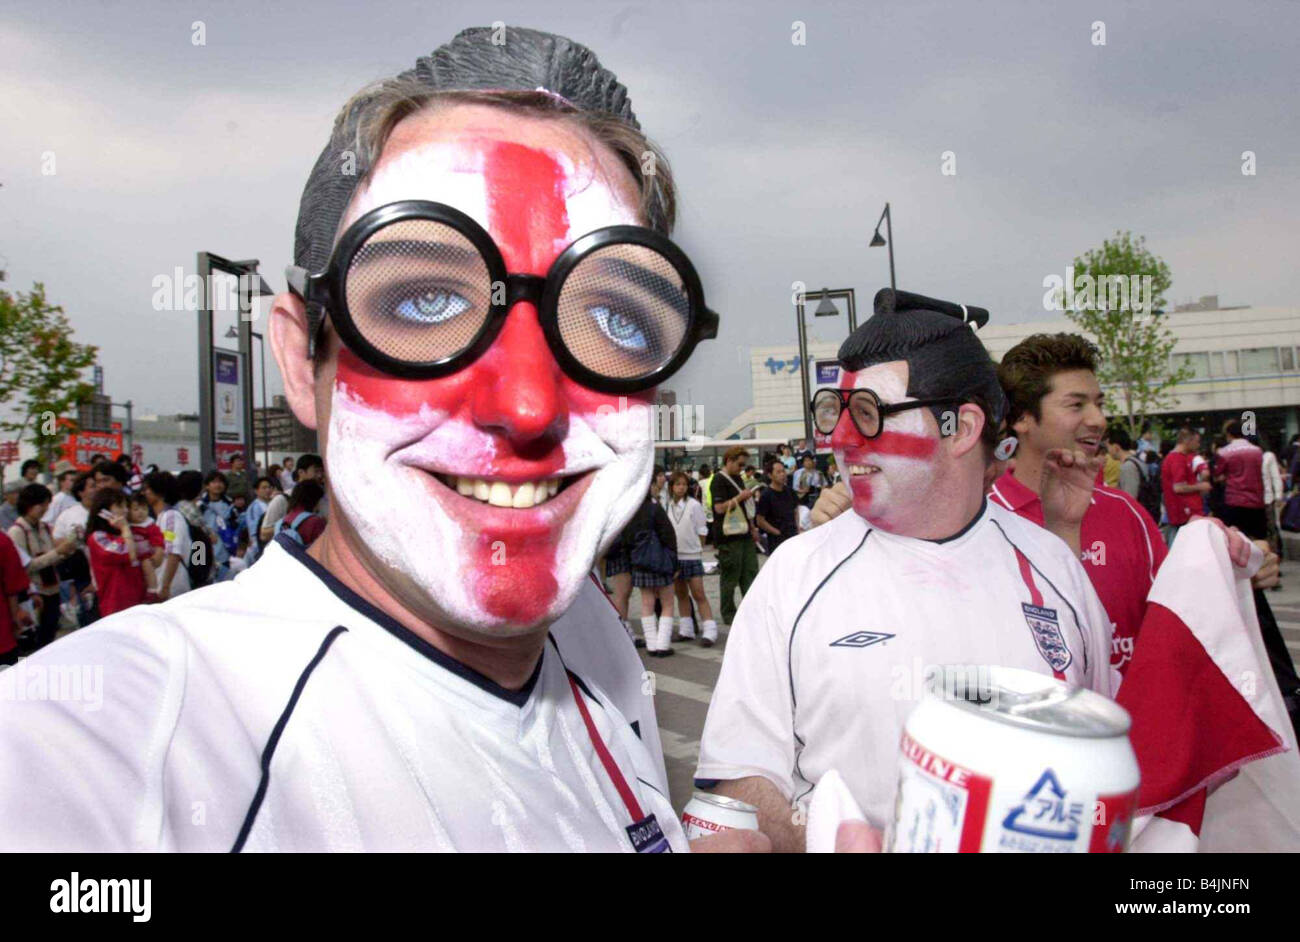 Angleterre Football Fans Supporters Juin 2002 Photo célébrant après avoir gagner contre l'Argentine Angleterre fans déguisés en japonais à Banque D'Images